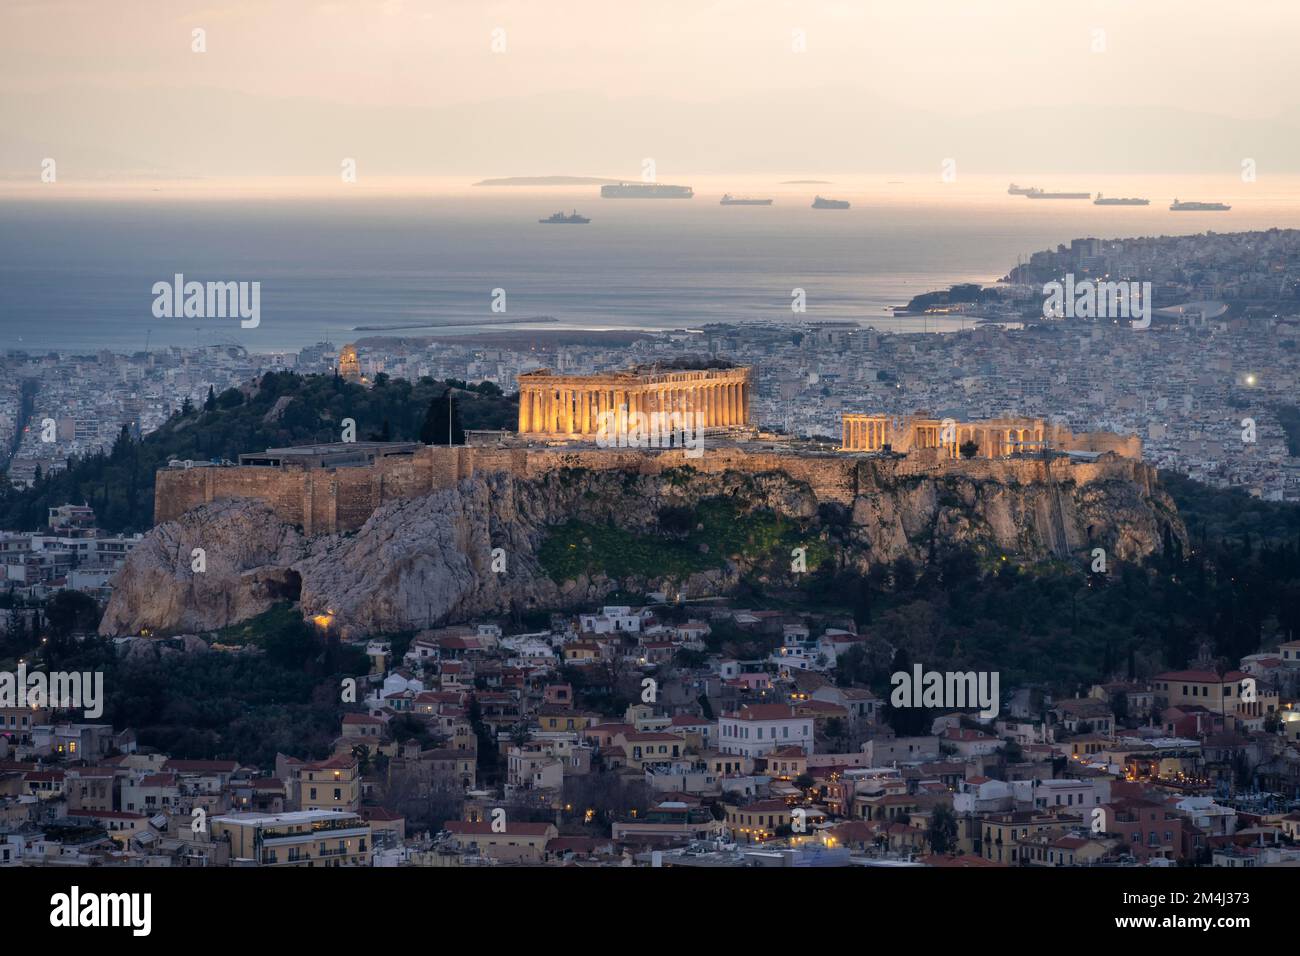 Ambiance nocturne, Temple du Parthénon, Acropole, Athènes, Grèce Banque D'Images